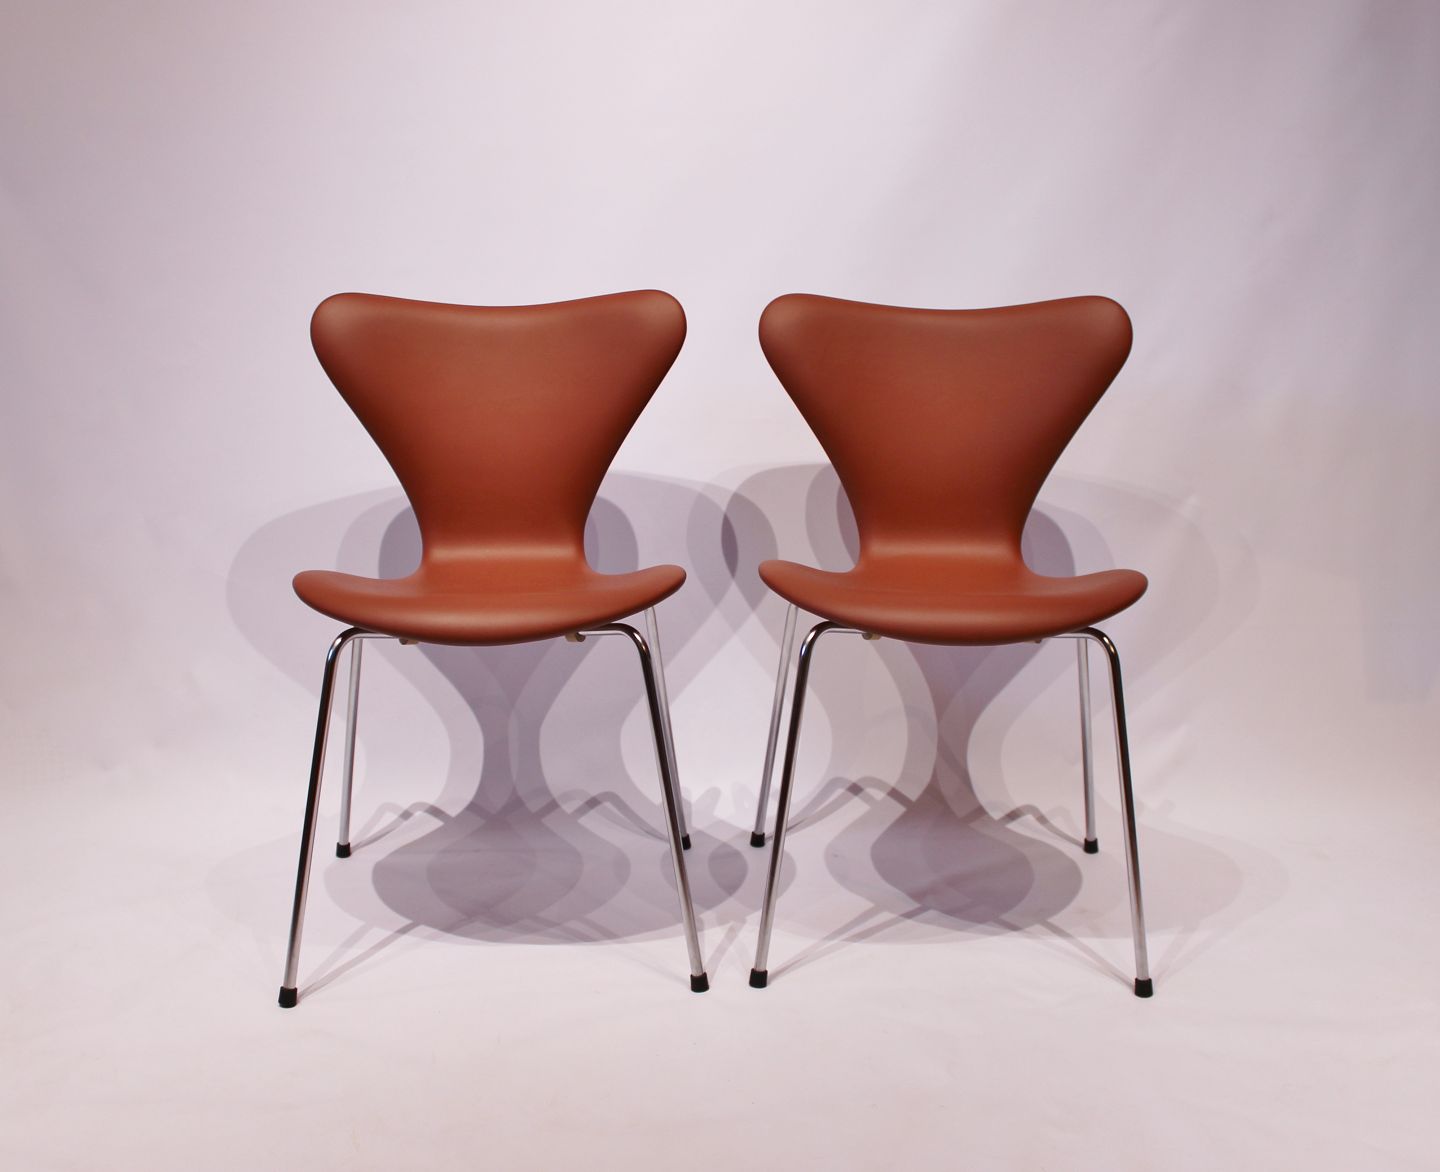 www.Antikvitet.net - Et par syver stole, 3107, i cognac farvet savanne læder, designet af Arne Jacobsen og fremstil